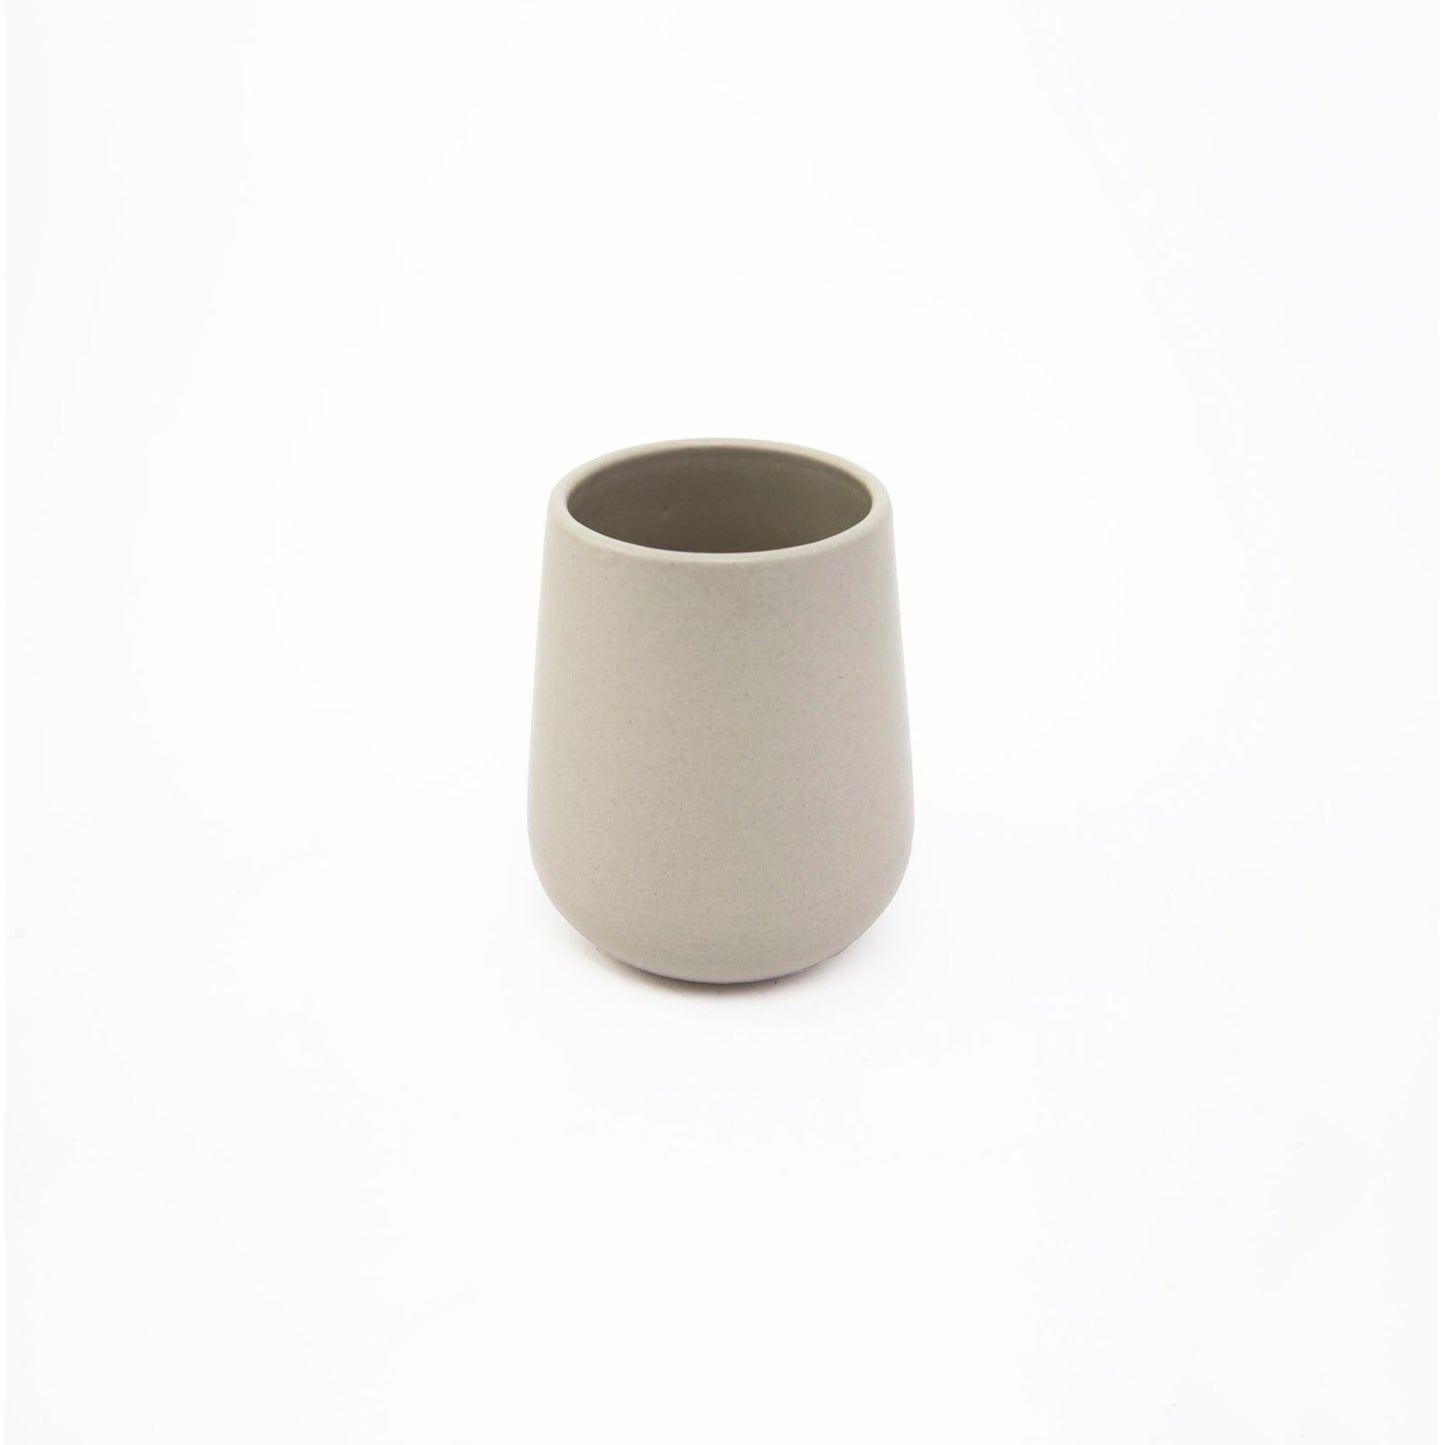 Carthage La Marsa 4-Piece Handcrafted Stoneware Cup Set